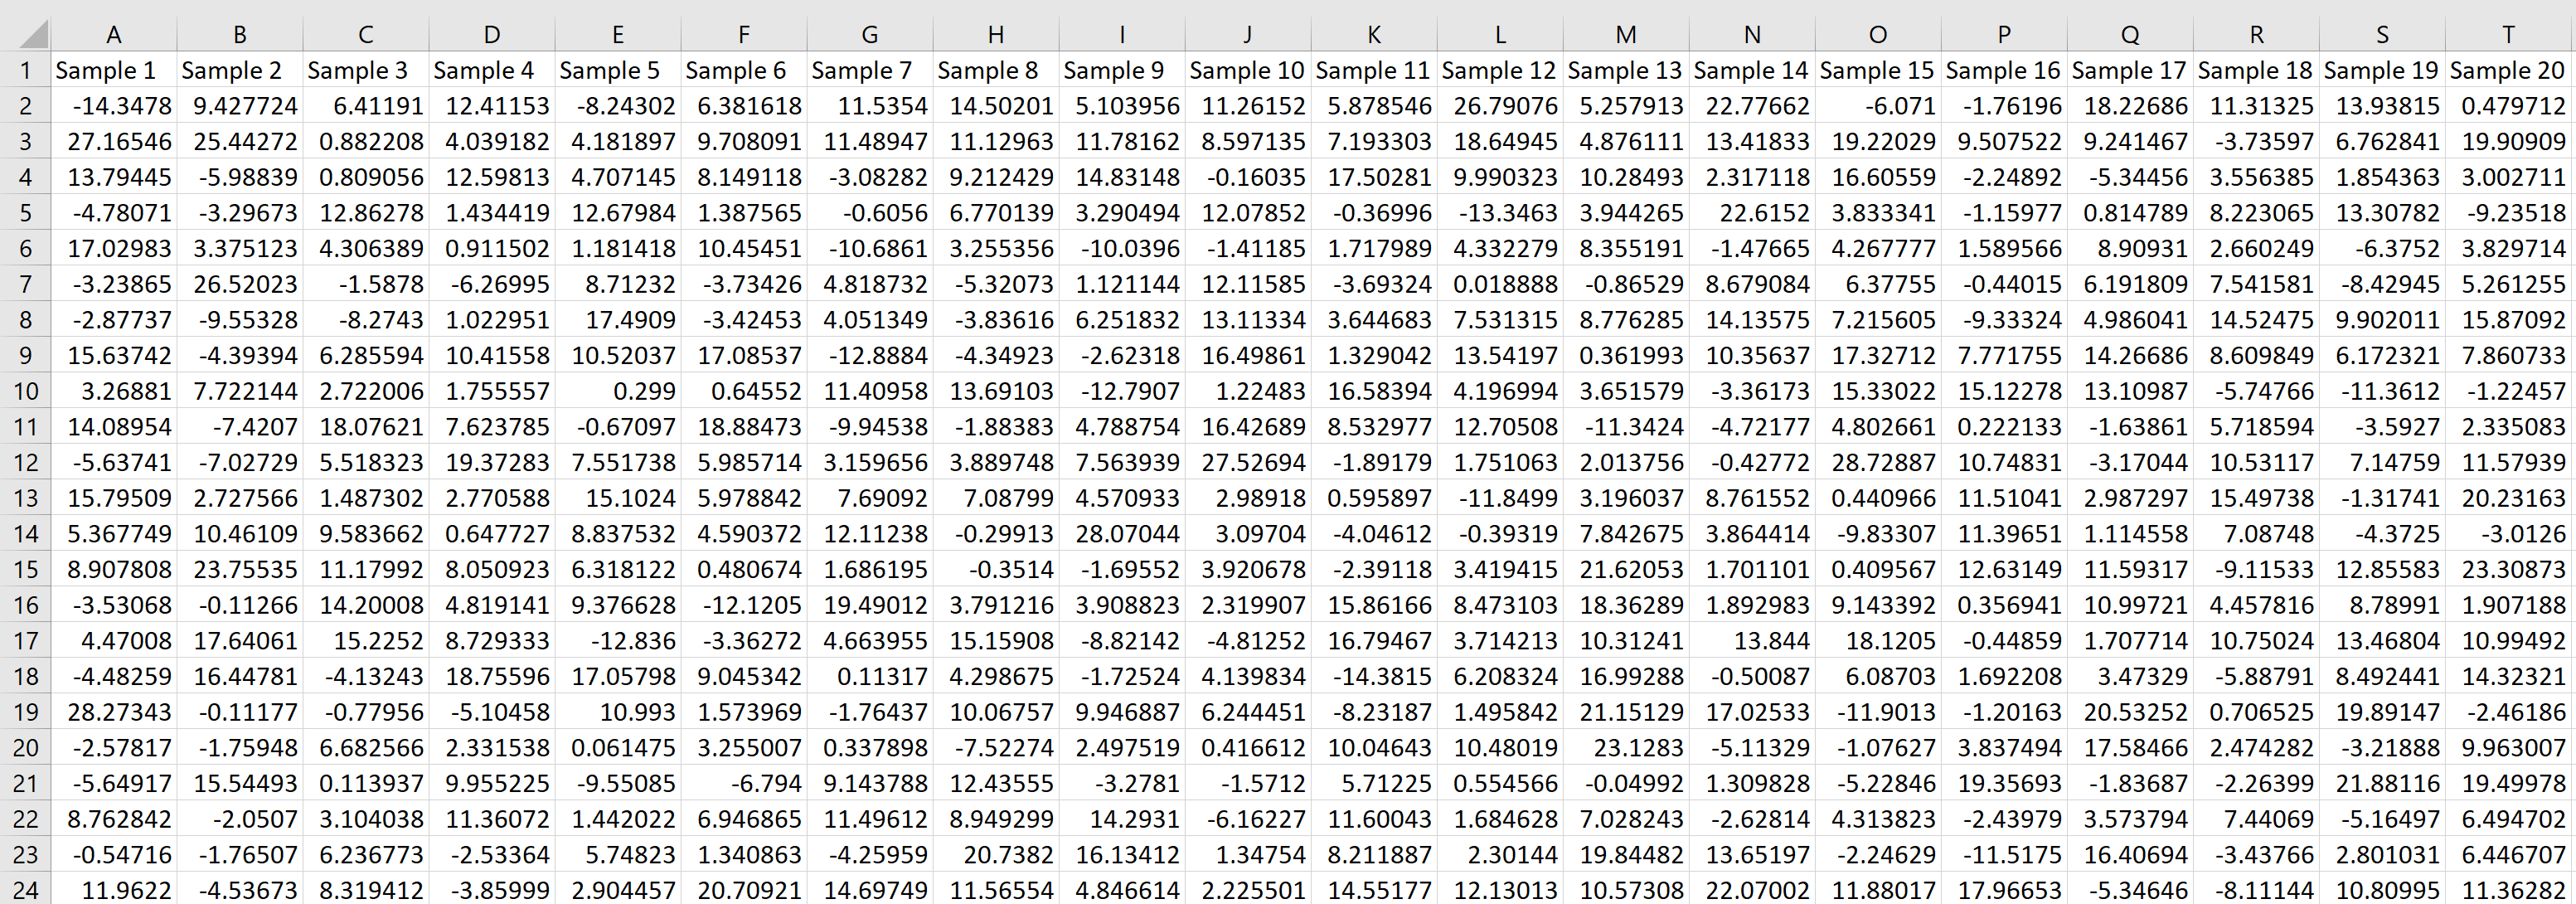 Rata-rata Pengambilan Sampel di Excel